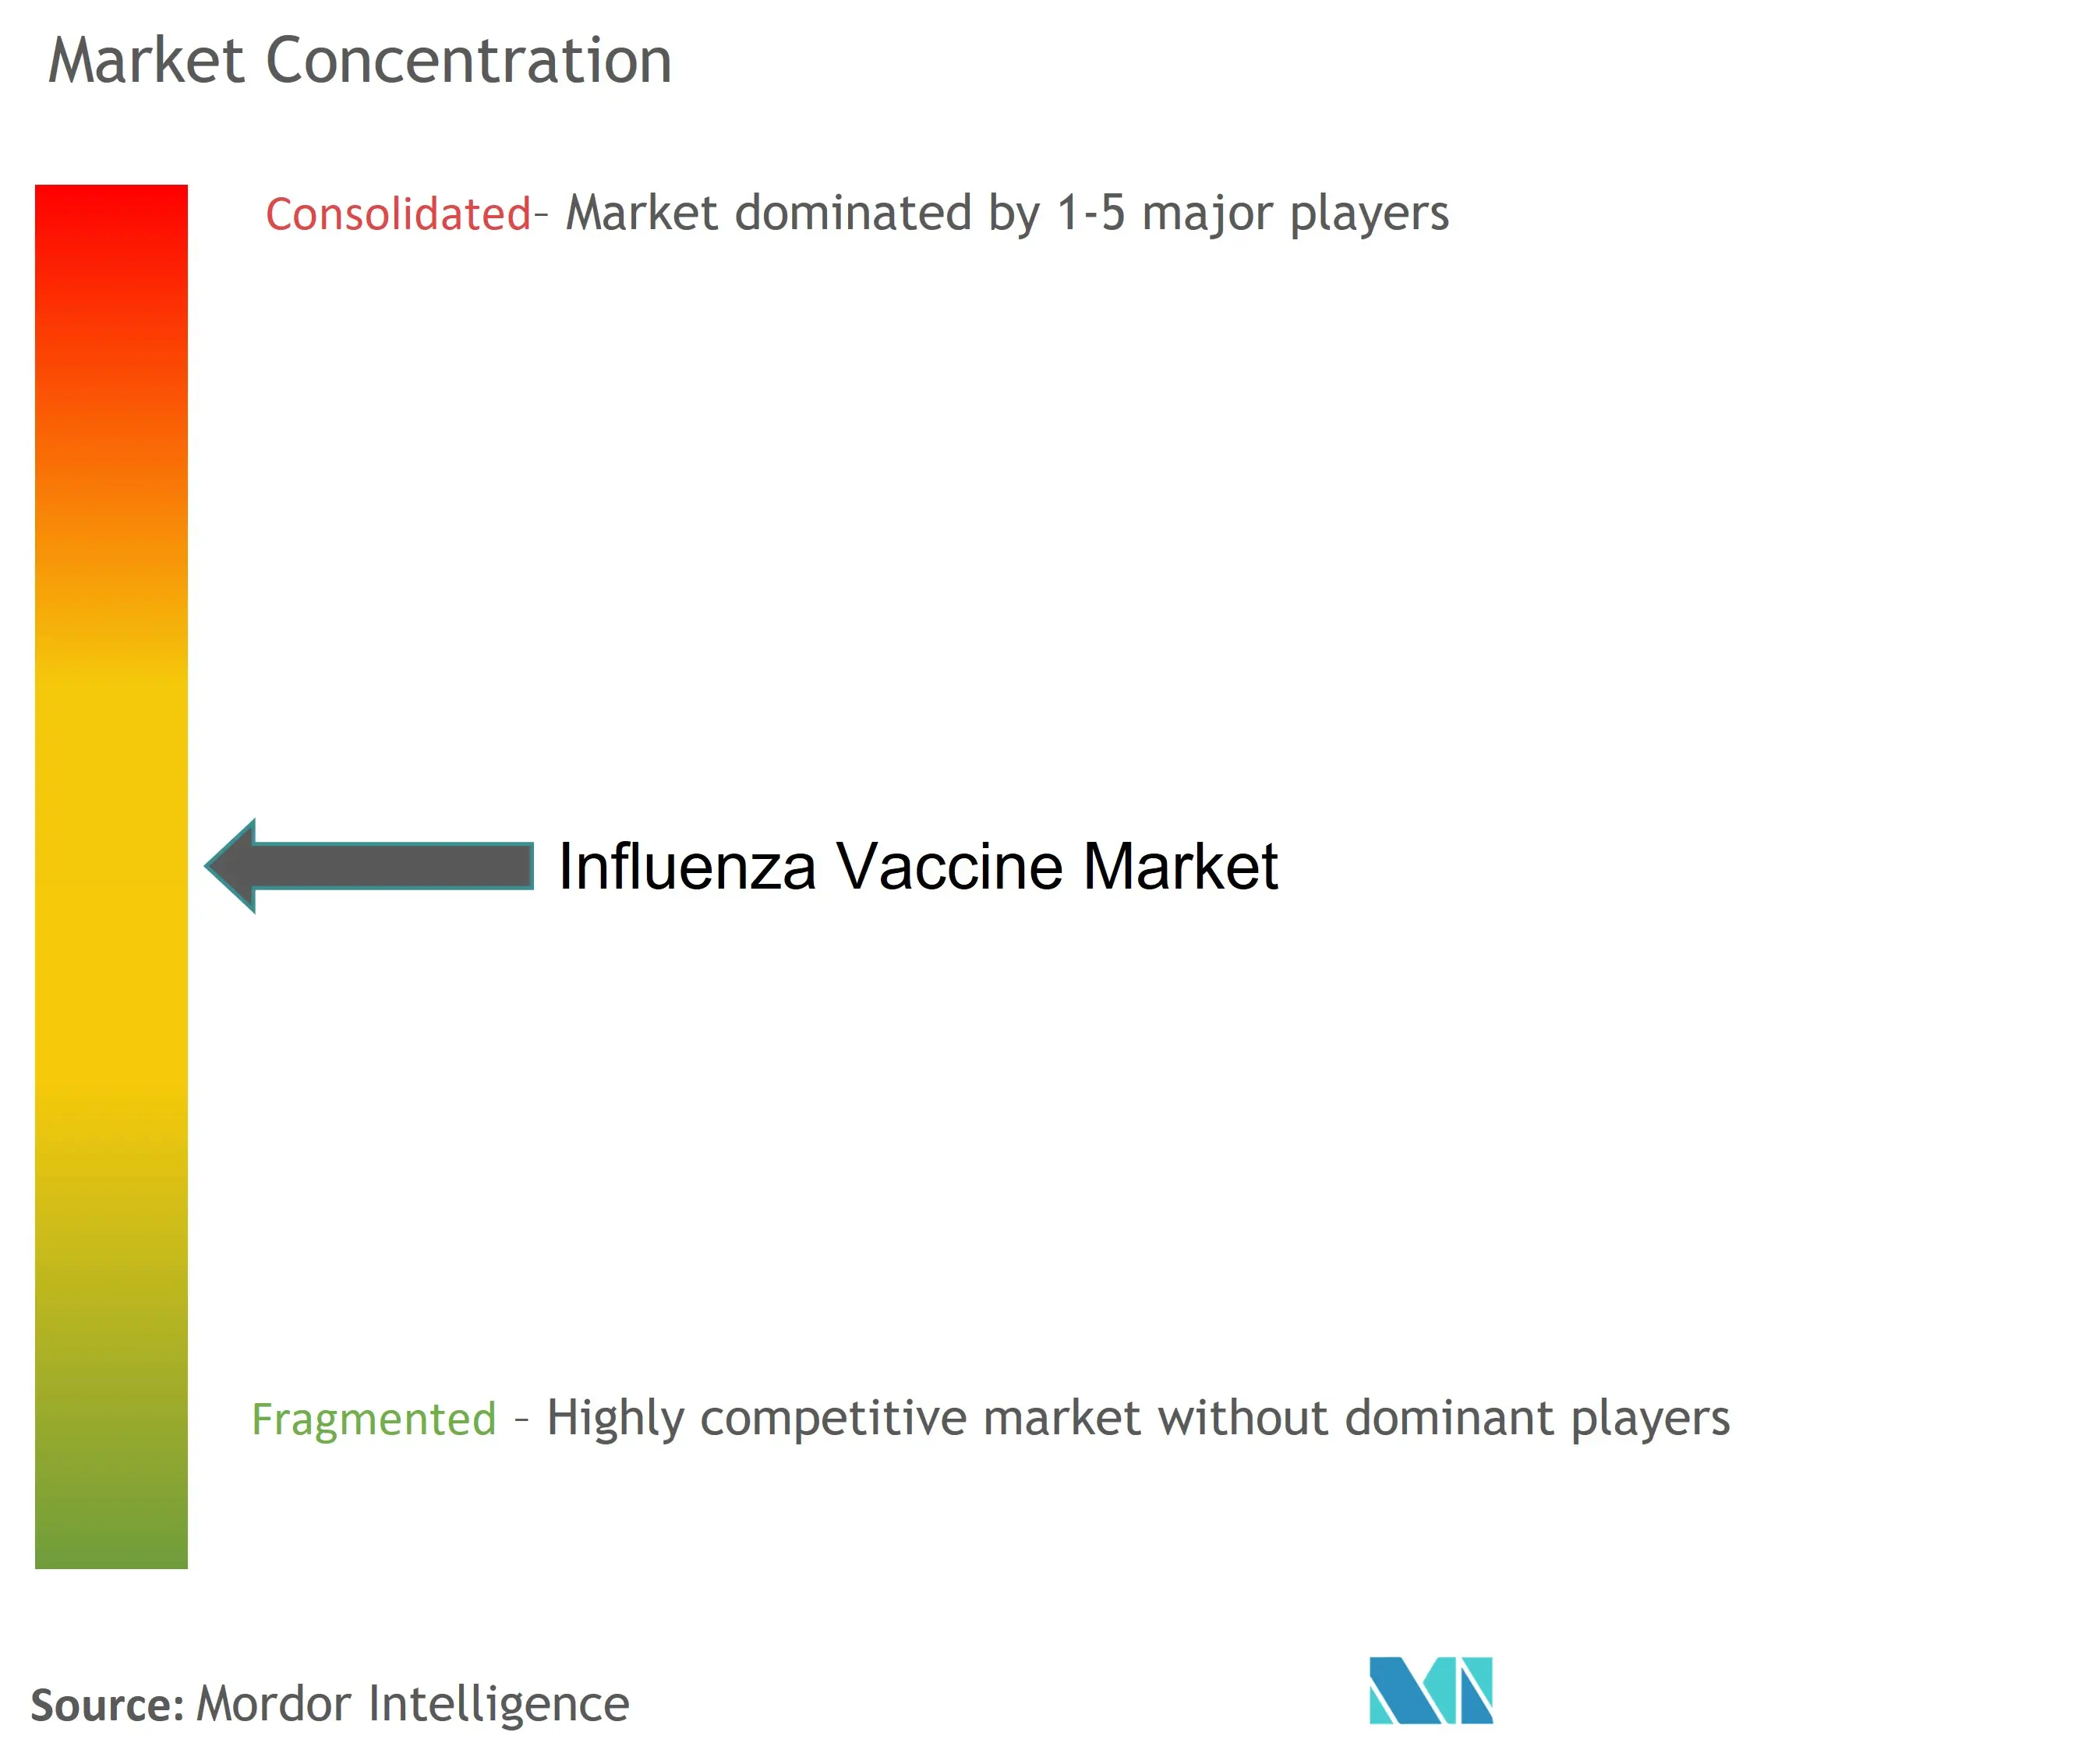 インフルエンザ・ワクチン市場の集中度